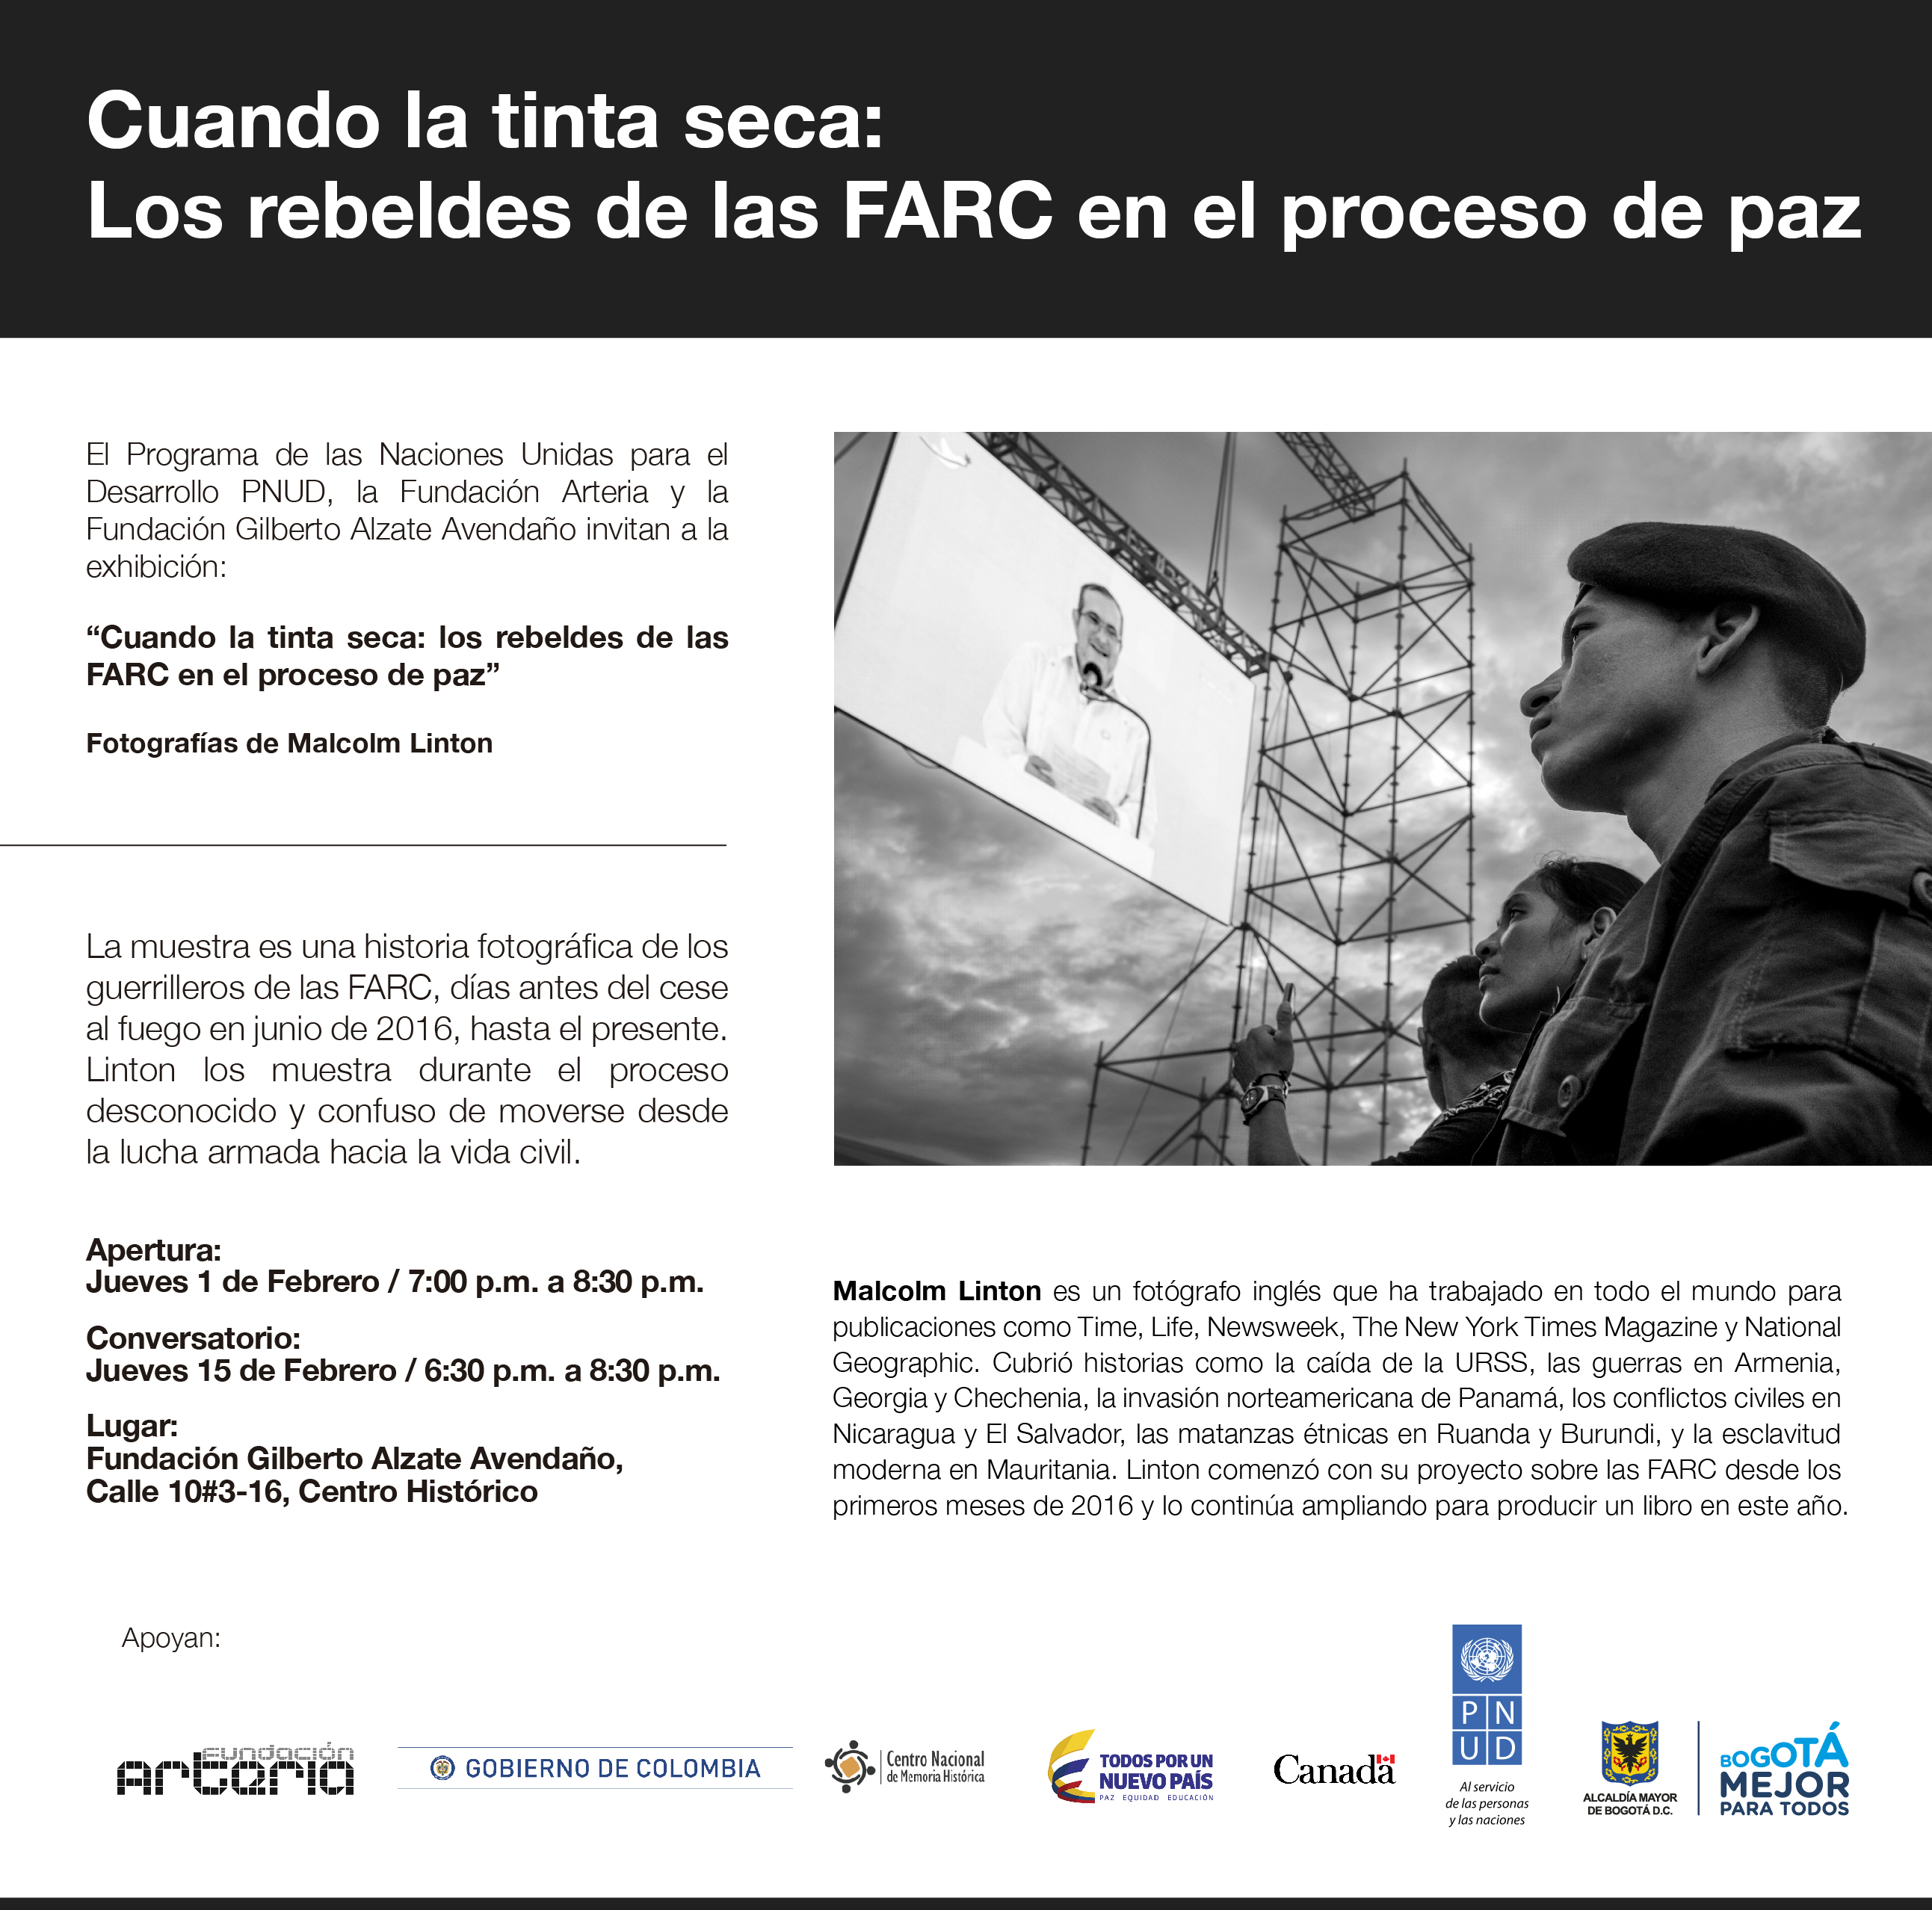 Cuando la tinta seca: Los rebeldes de las FARC en el proceso de paz